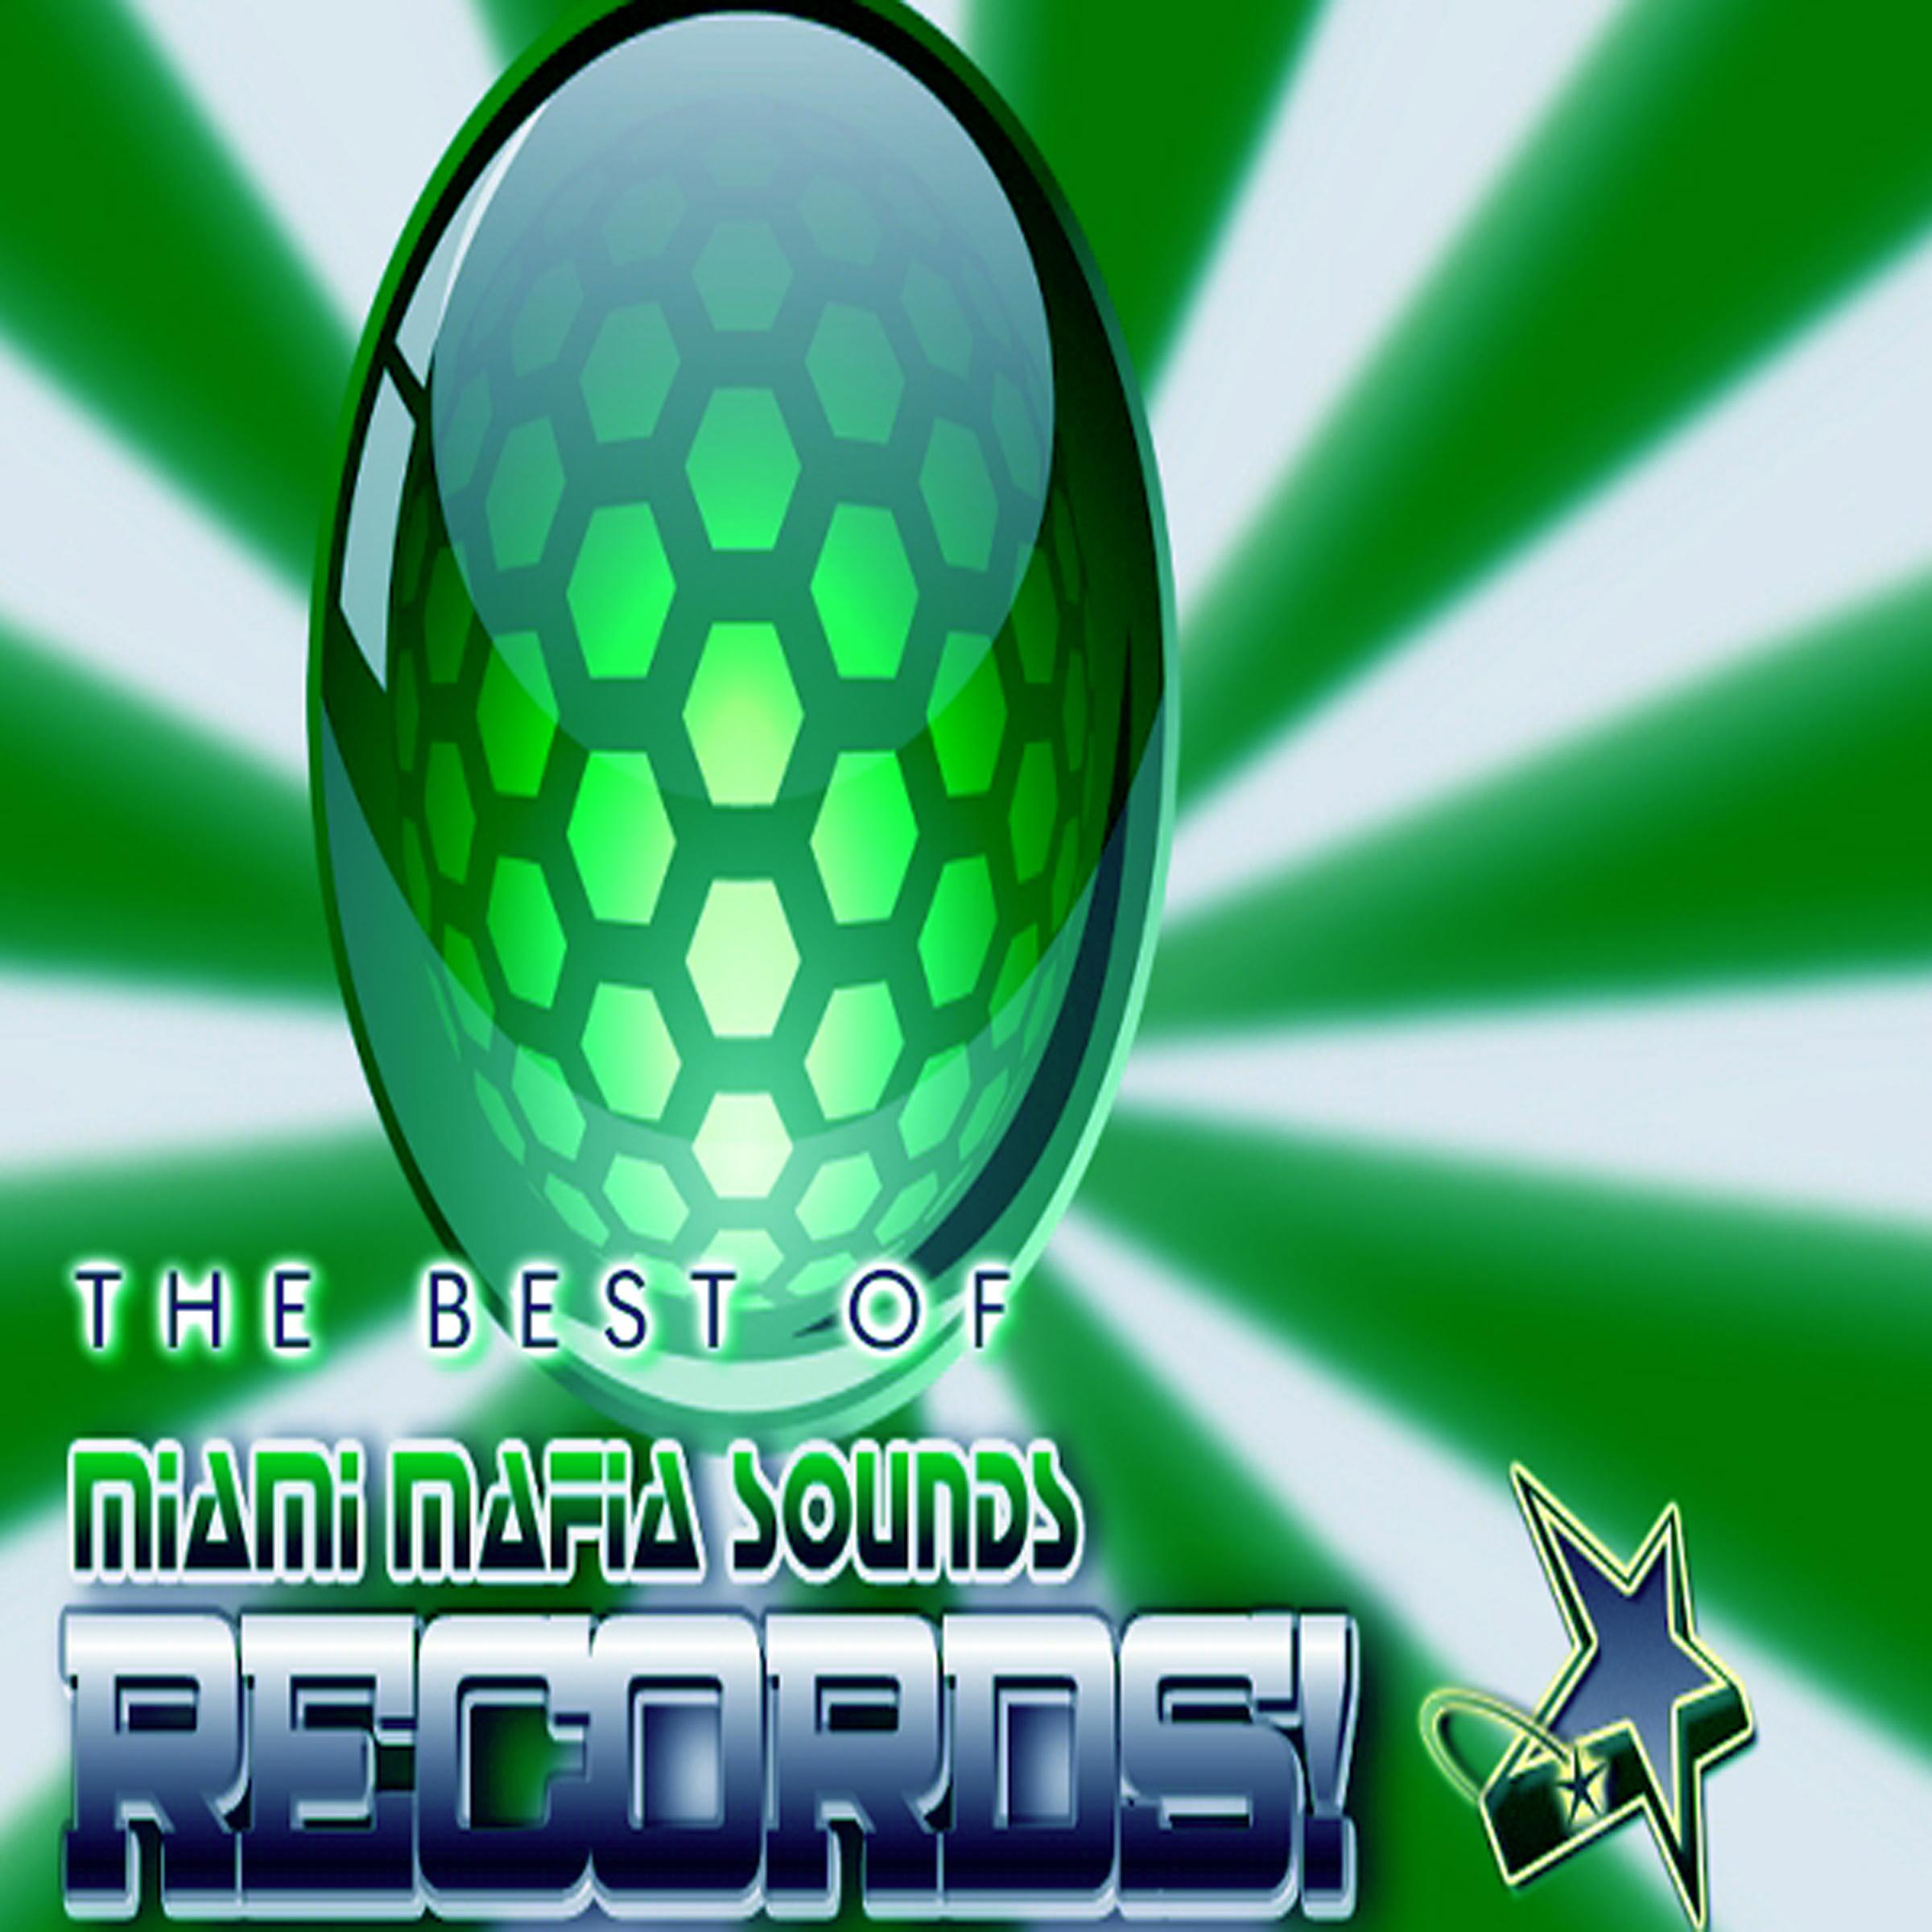 Best of Miami Mafia Sounds Records, Vol. 1